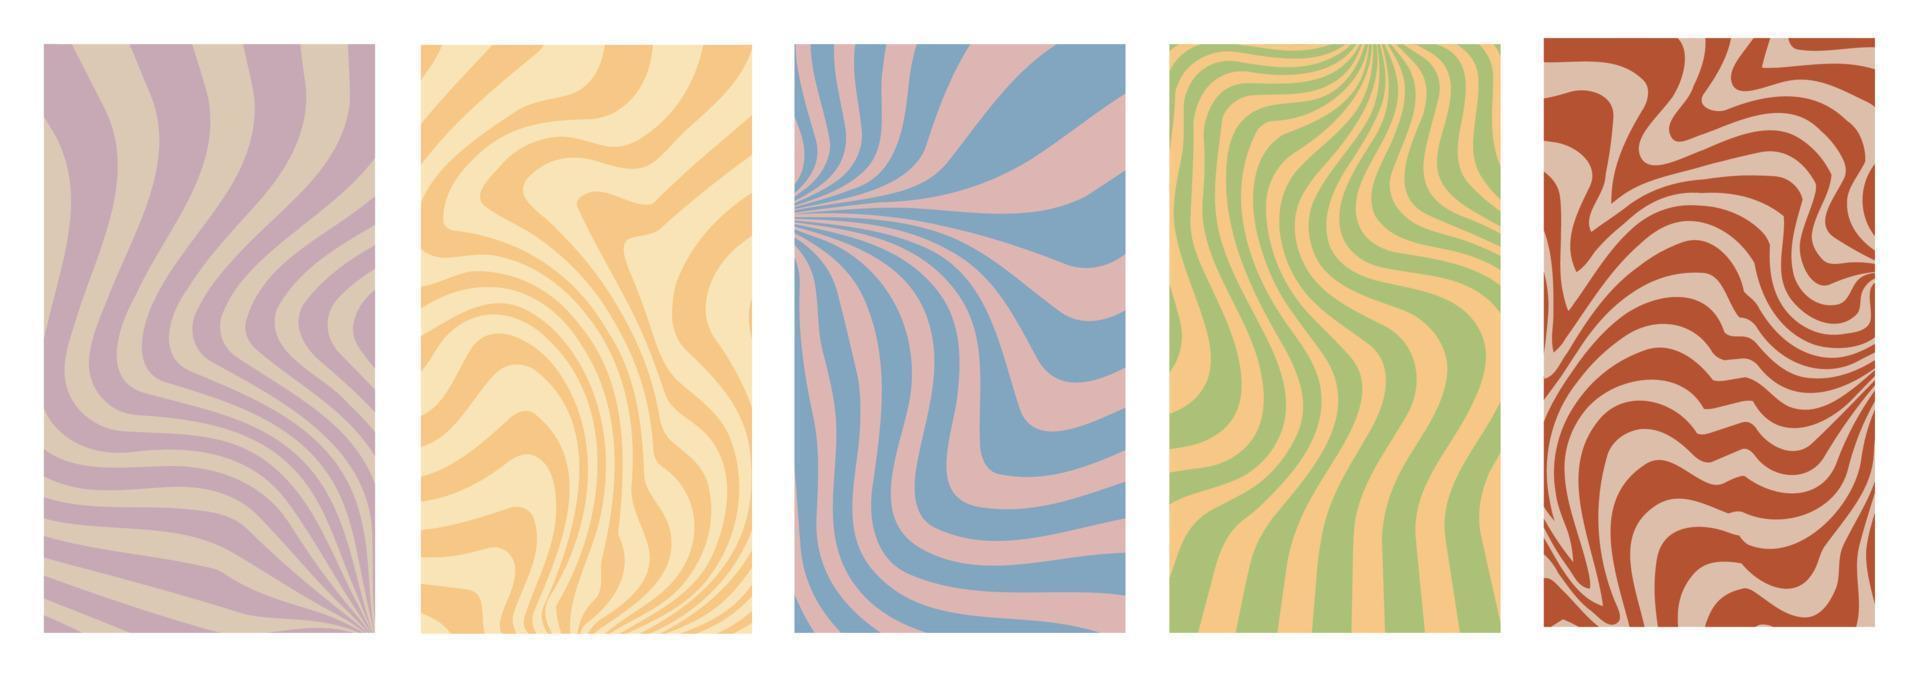 groovy achtergronden met wervelen, golven, gedraaid patroon. vervormd structuur in de modieus retro stijl van de hippie jaren 70. y2k stijlvol. vector. vector